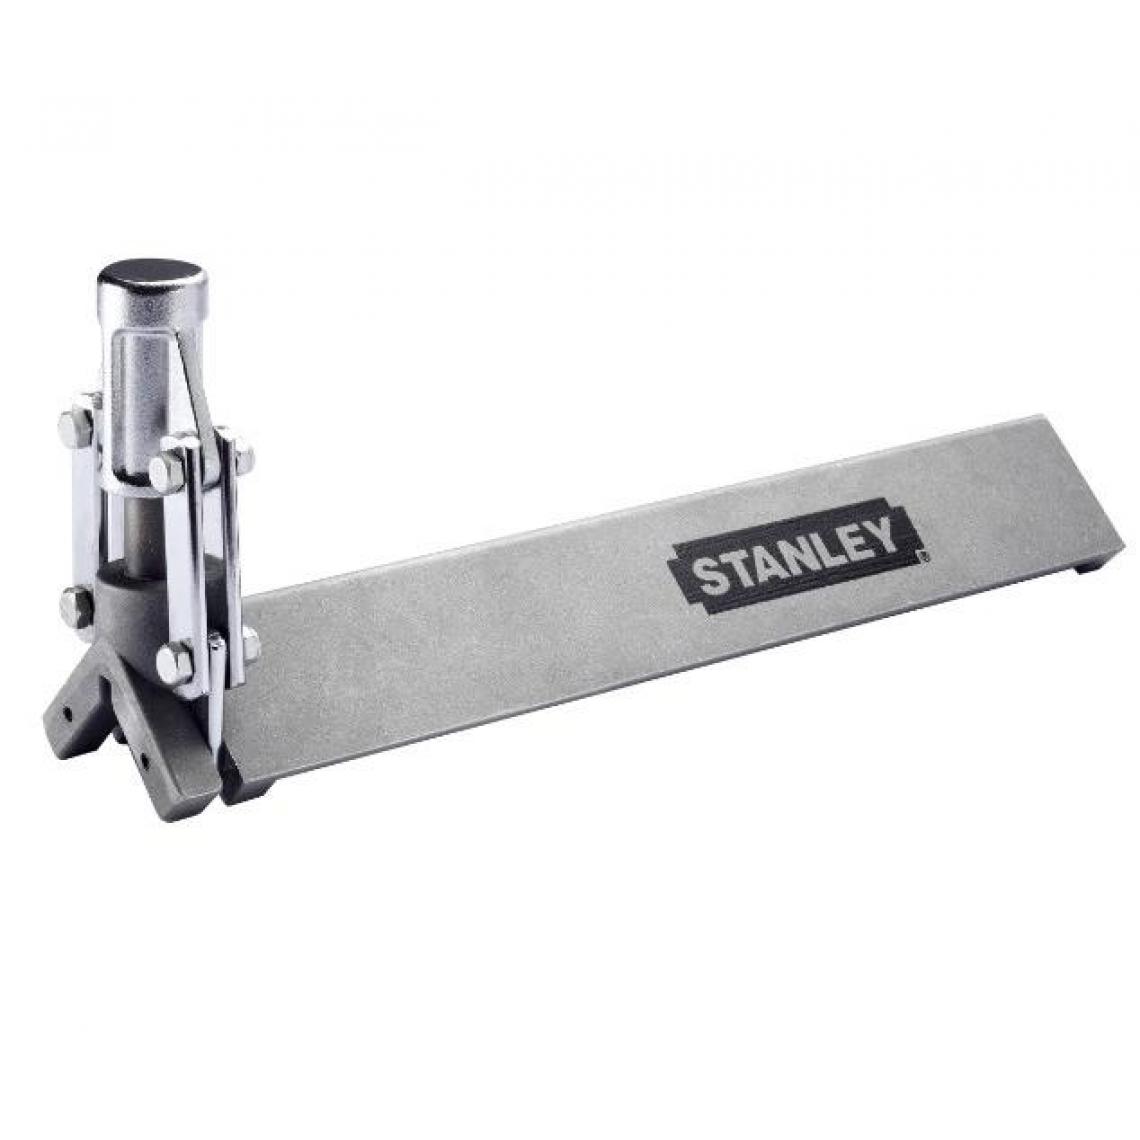 Stanley - Stanley - Pince à cornière 29X29mm - STHT1-16132 - Presses et serre-joints